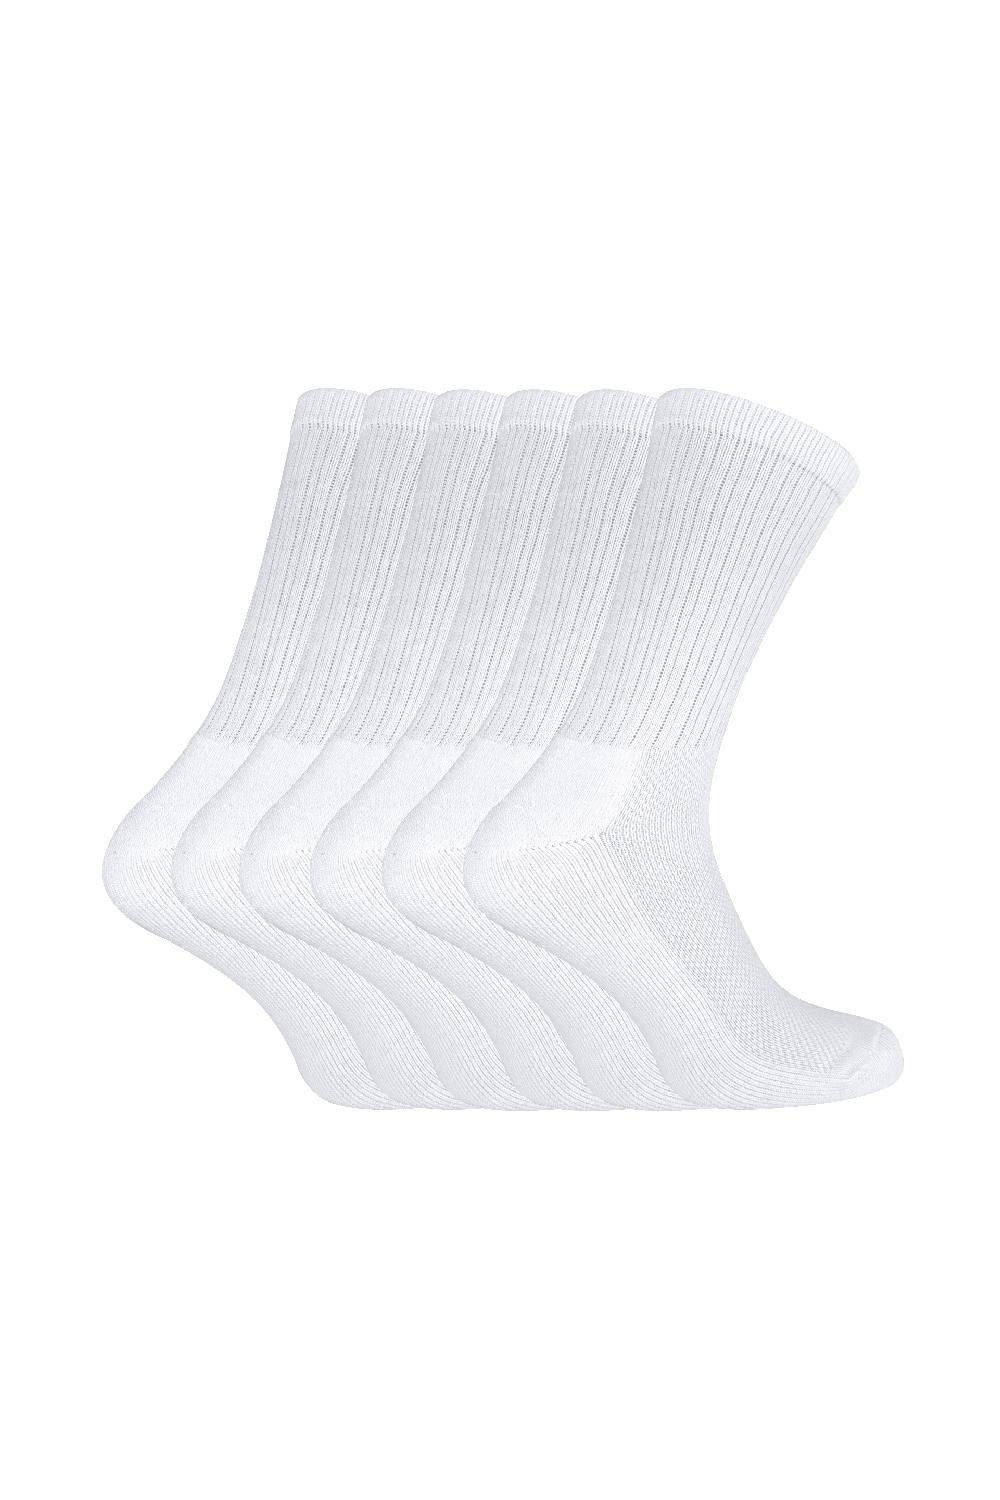 6 Pairs Soft Bamboo Organic Cotton Running Sport Socks